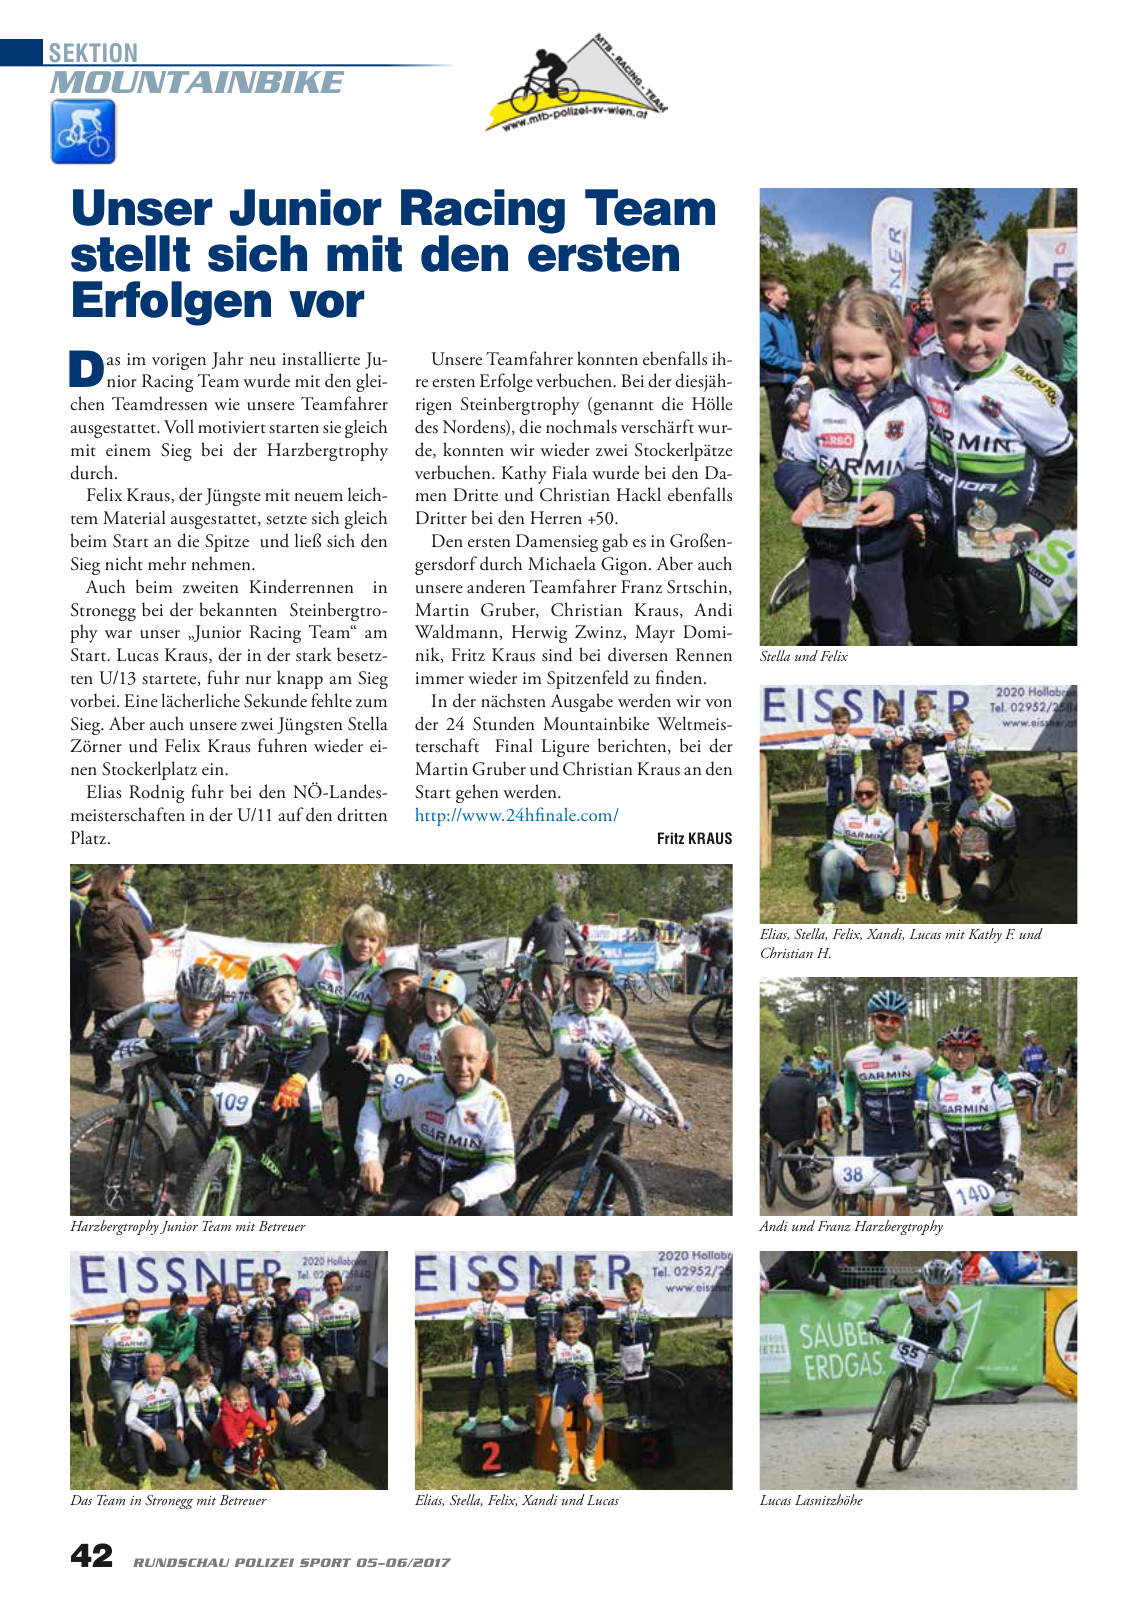 Vorschau Rundschau Polizei Sport 05-06/2017 Seite 42